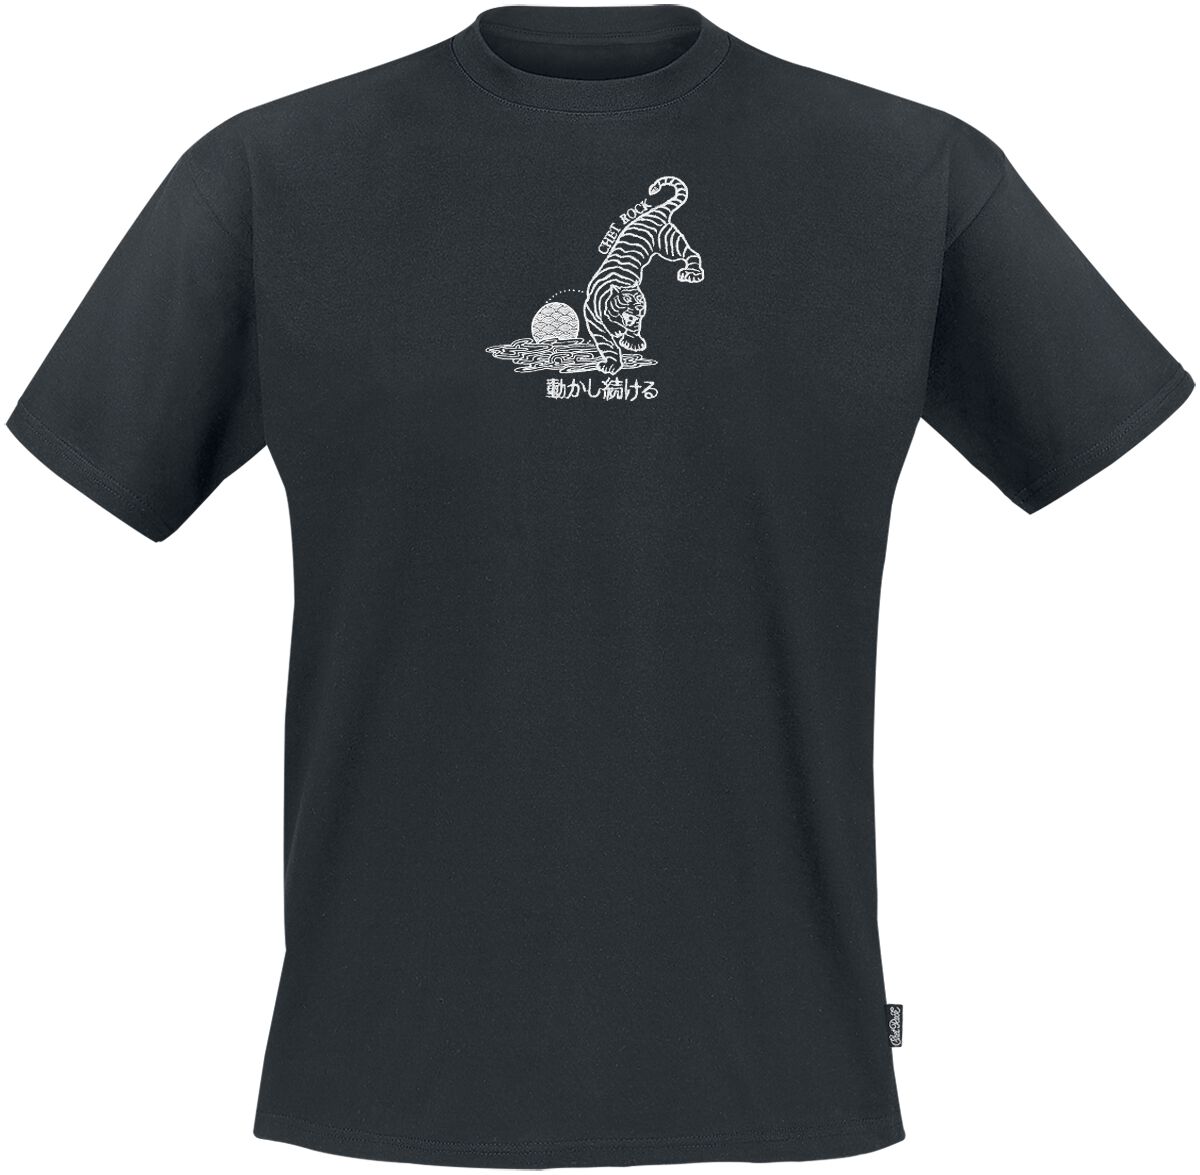 Chet Rock Crouching Tiger T-Shirt schwarz in M von Chet Rock